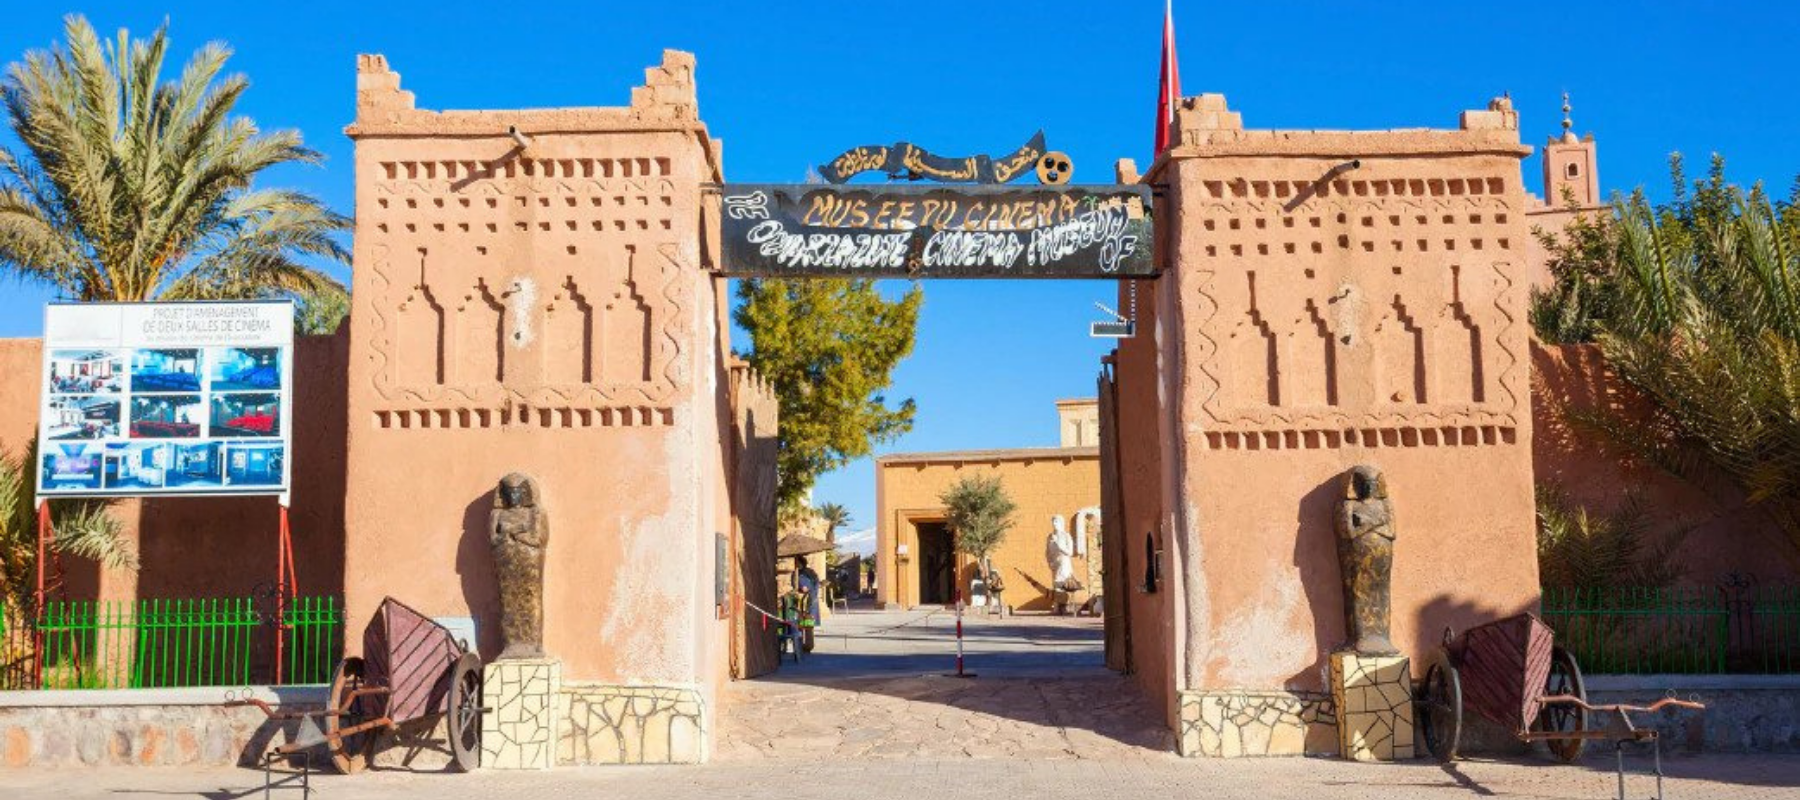 Cinema museum of Ouarzazate